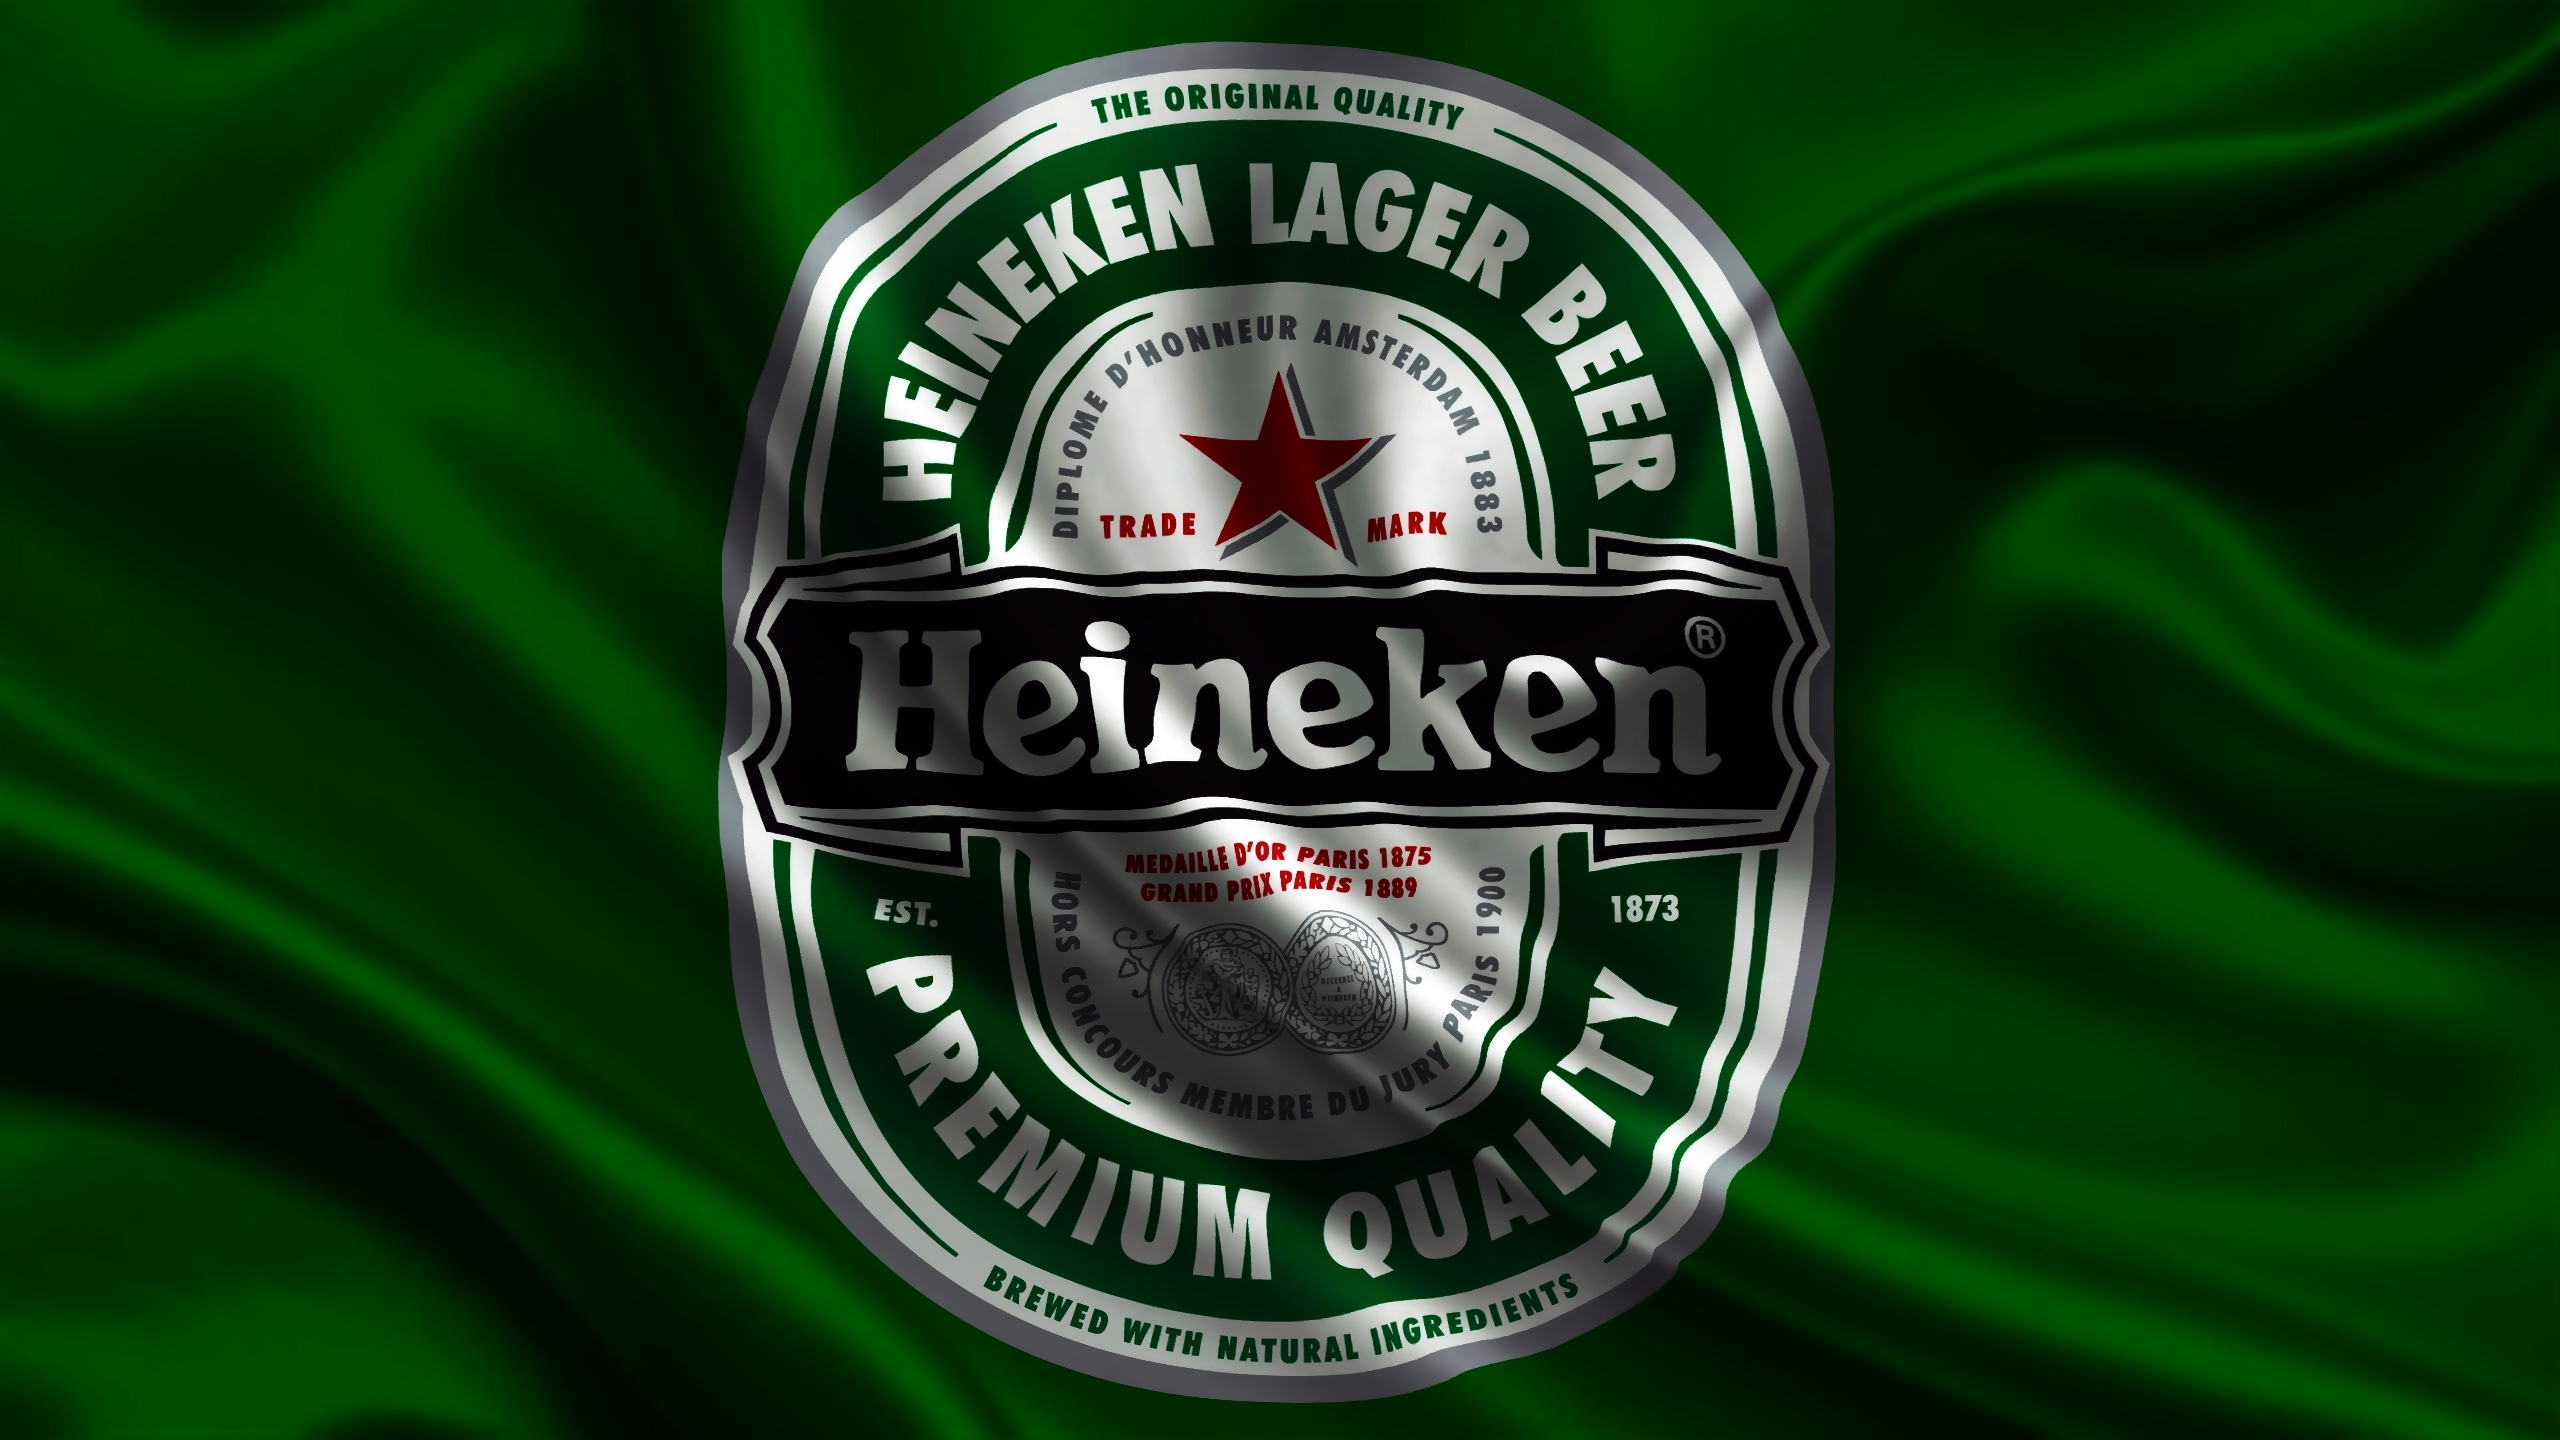 fond d'écran cerveja,vert,emblème,herbe,boisson